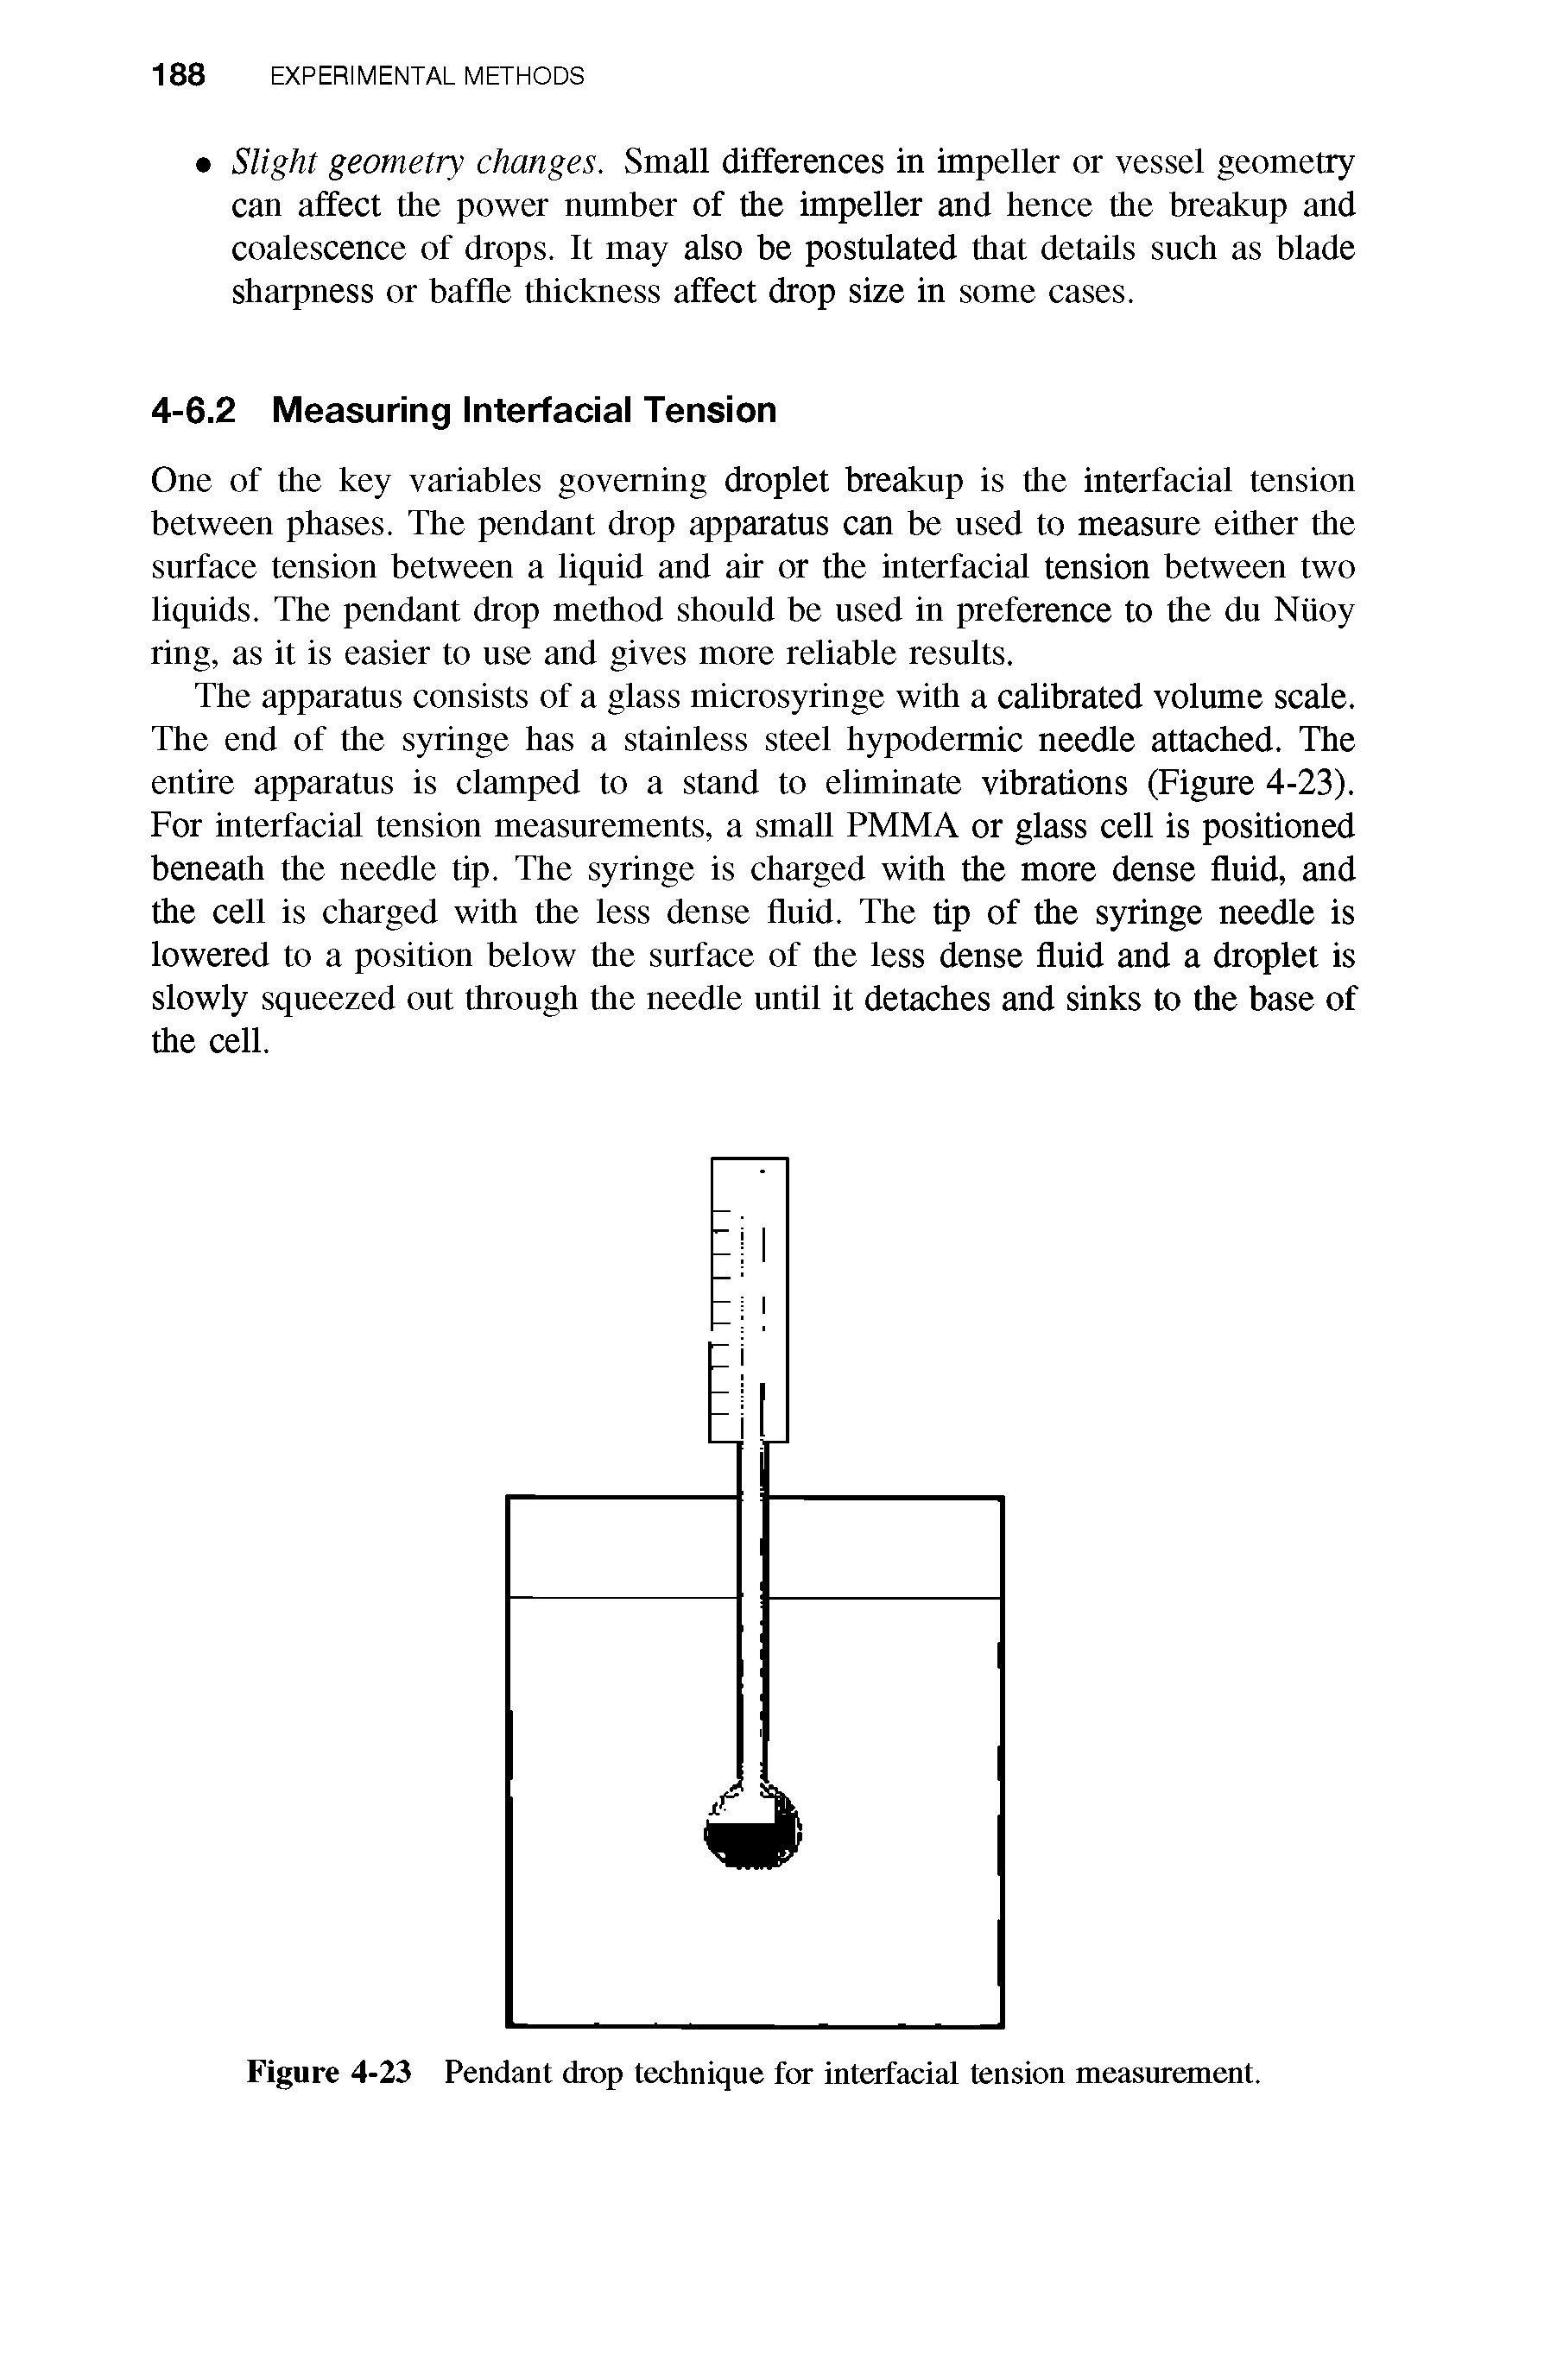 Figure 4-23 Pendant drop technique for interfacial tension measurement.